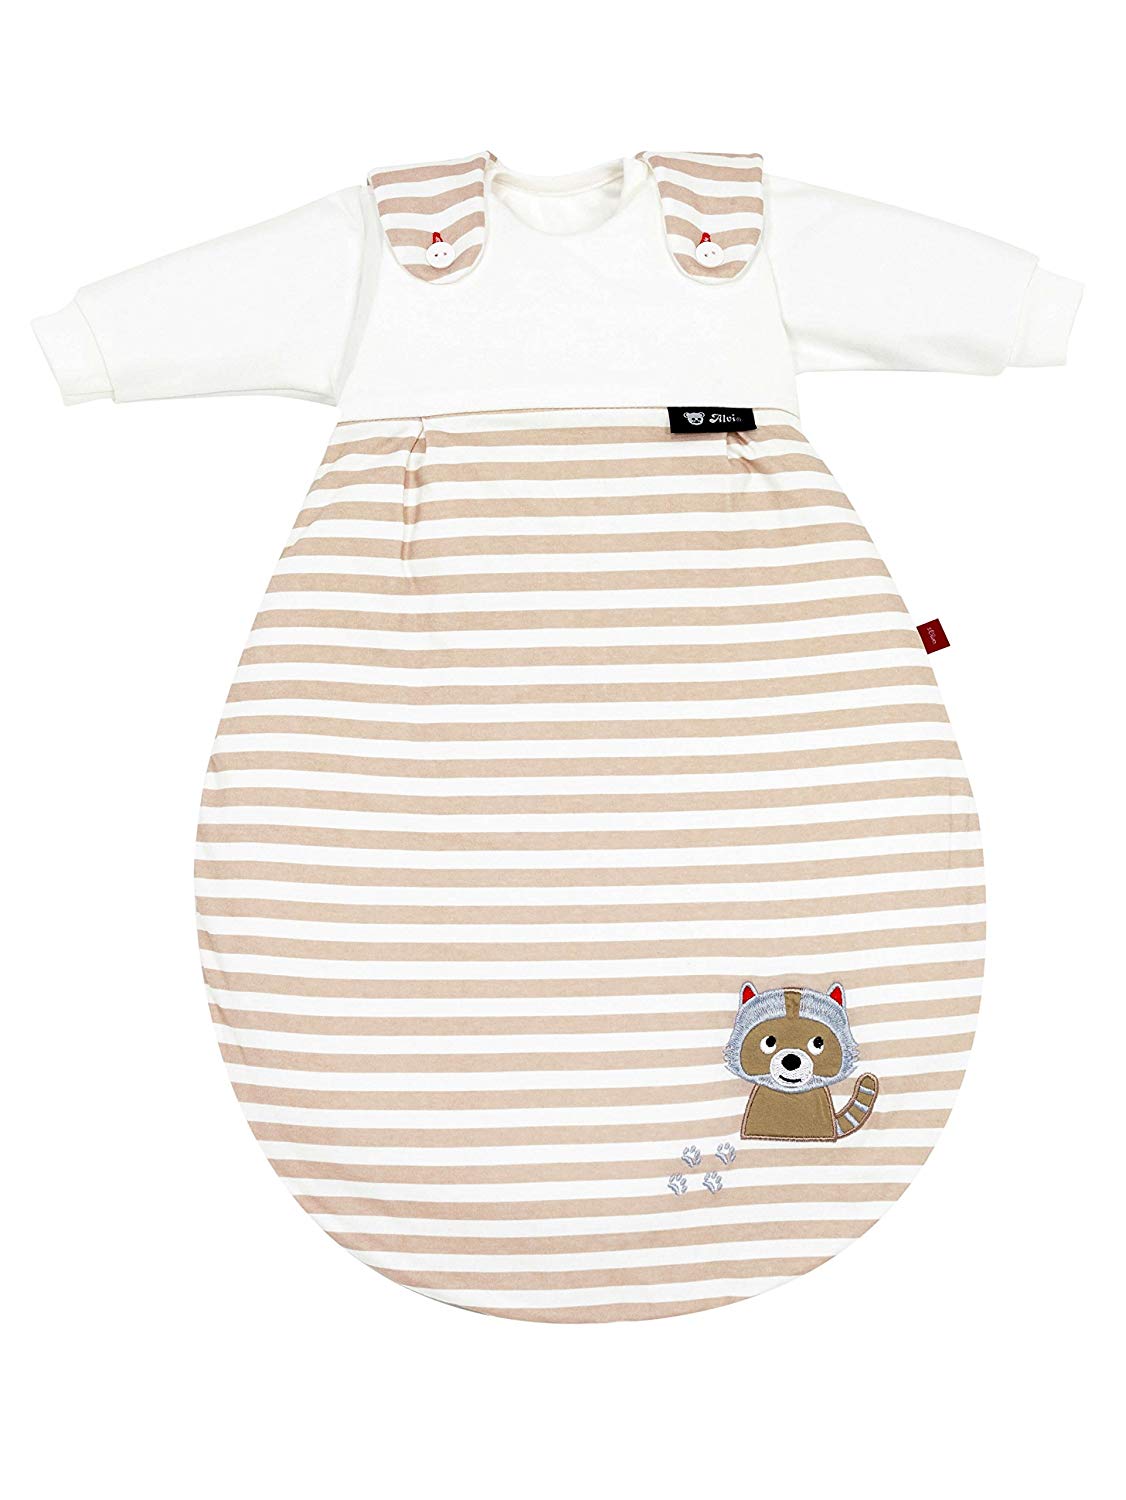 s. Oliver by Alvi Baby Mäxchen Baby Sleeping Bag Raccoon Set of 3, Size: 50/56, Design: Raccoon Beige